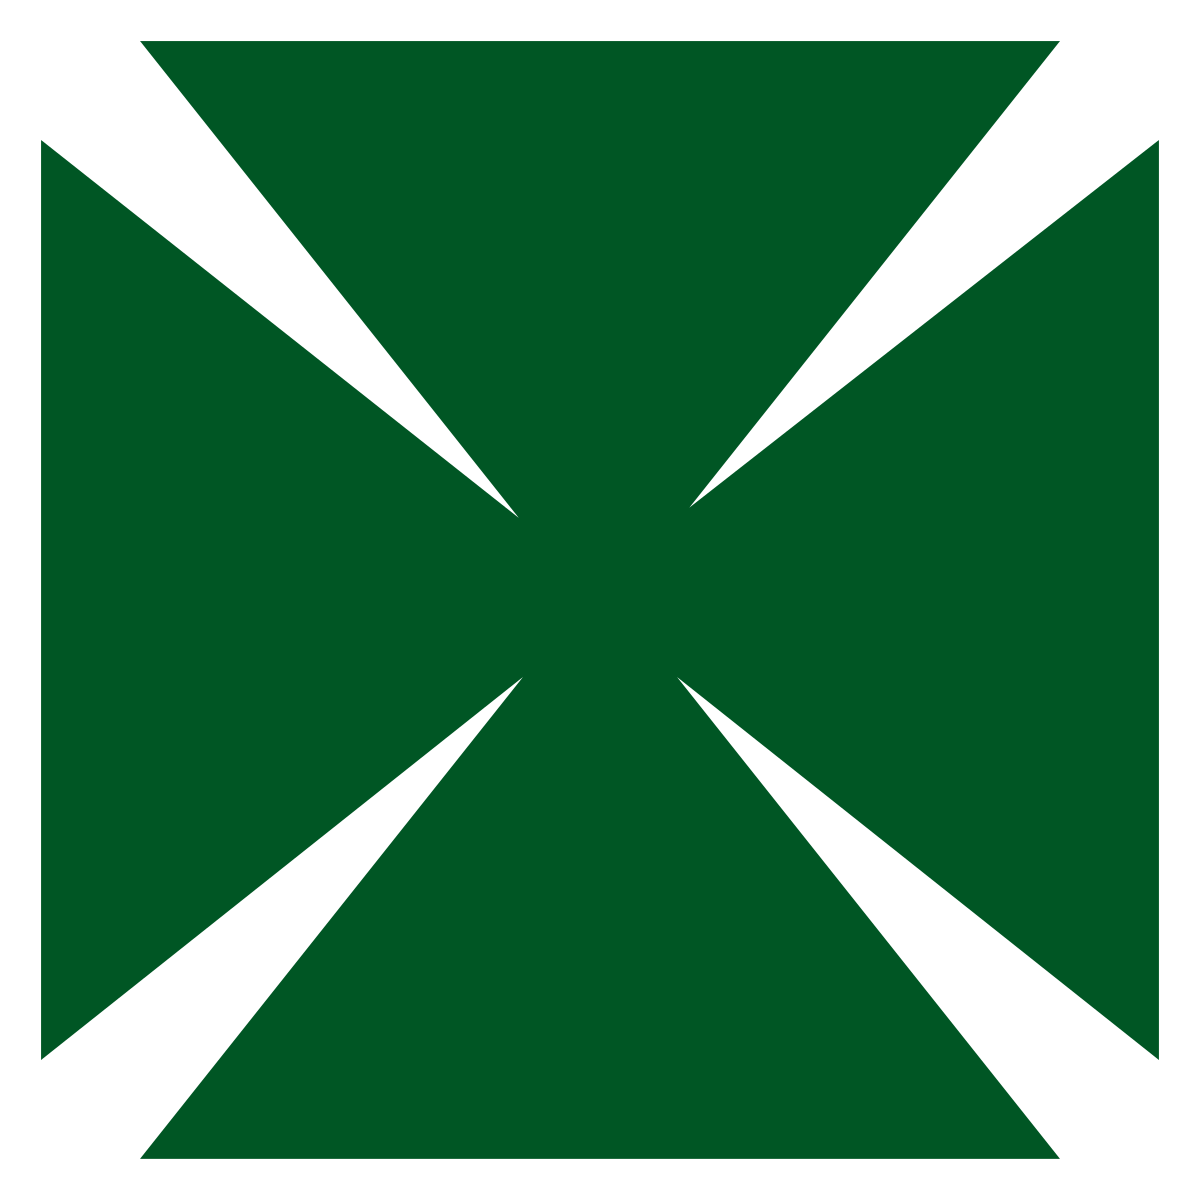 Green Cross Logo - C.D. Green Cross - Wikidata